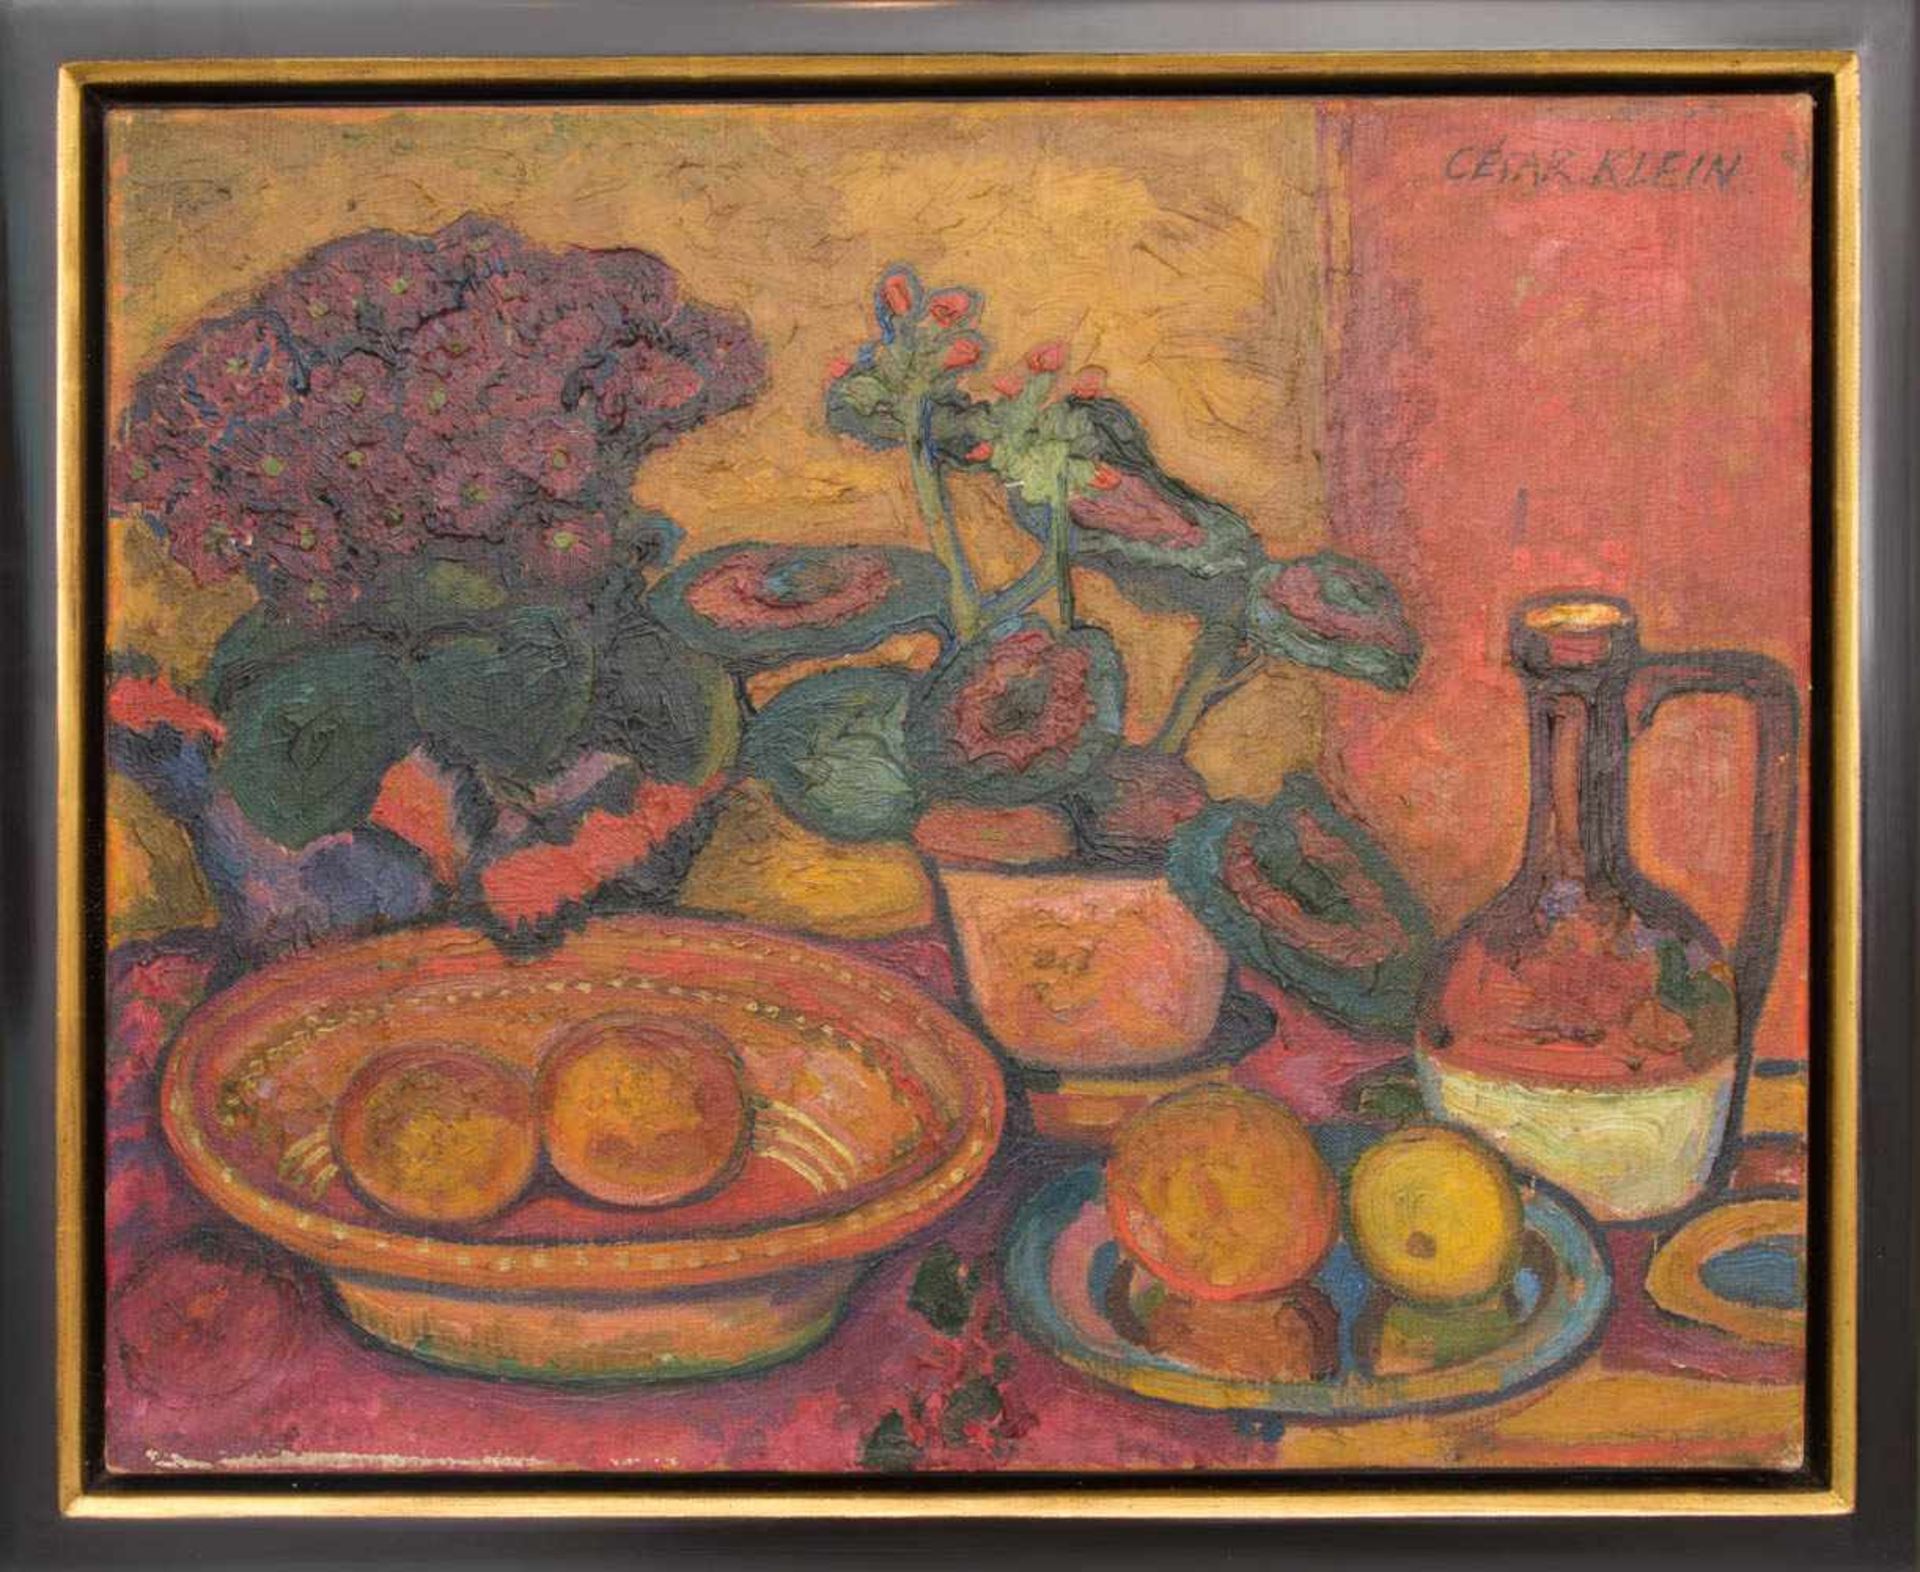 CESAR KLEIN, BLUMENSTILLLEBEN, Öl auf Leinwand.Stillleben im Stile Paul Cézannes von Cesar Klein (